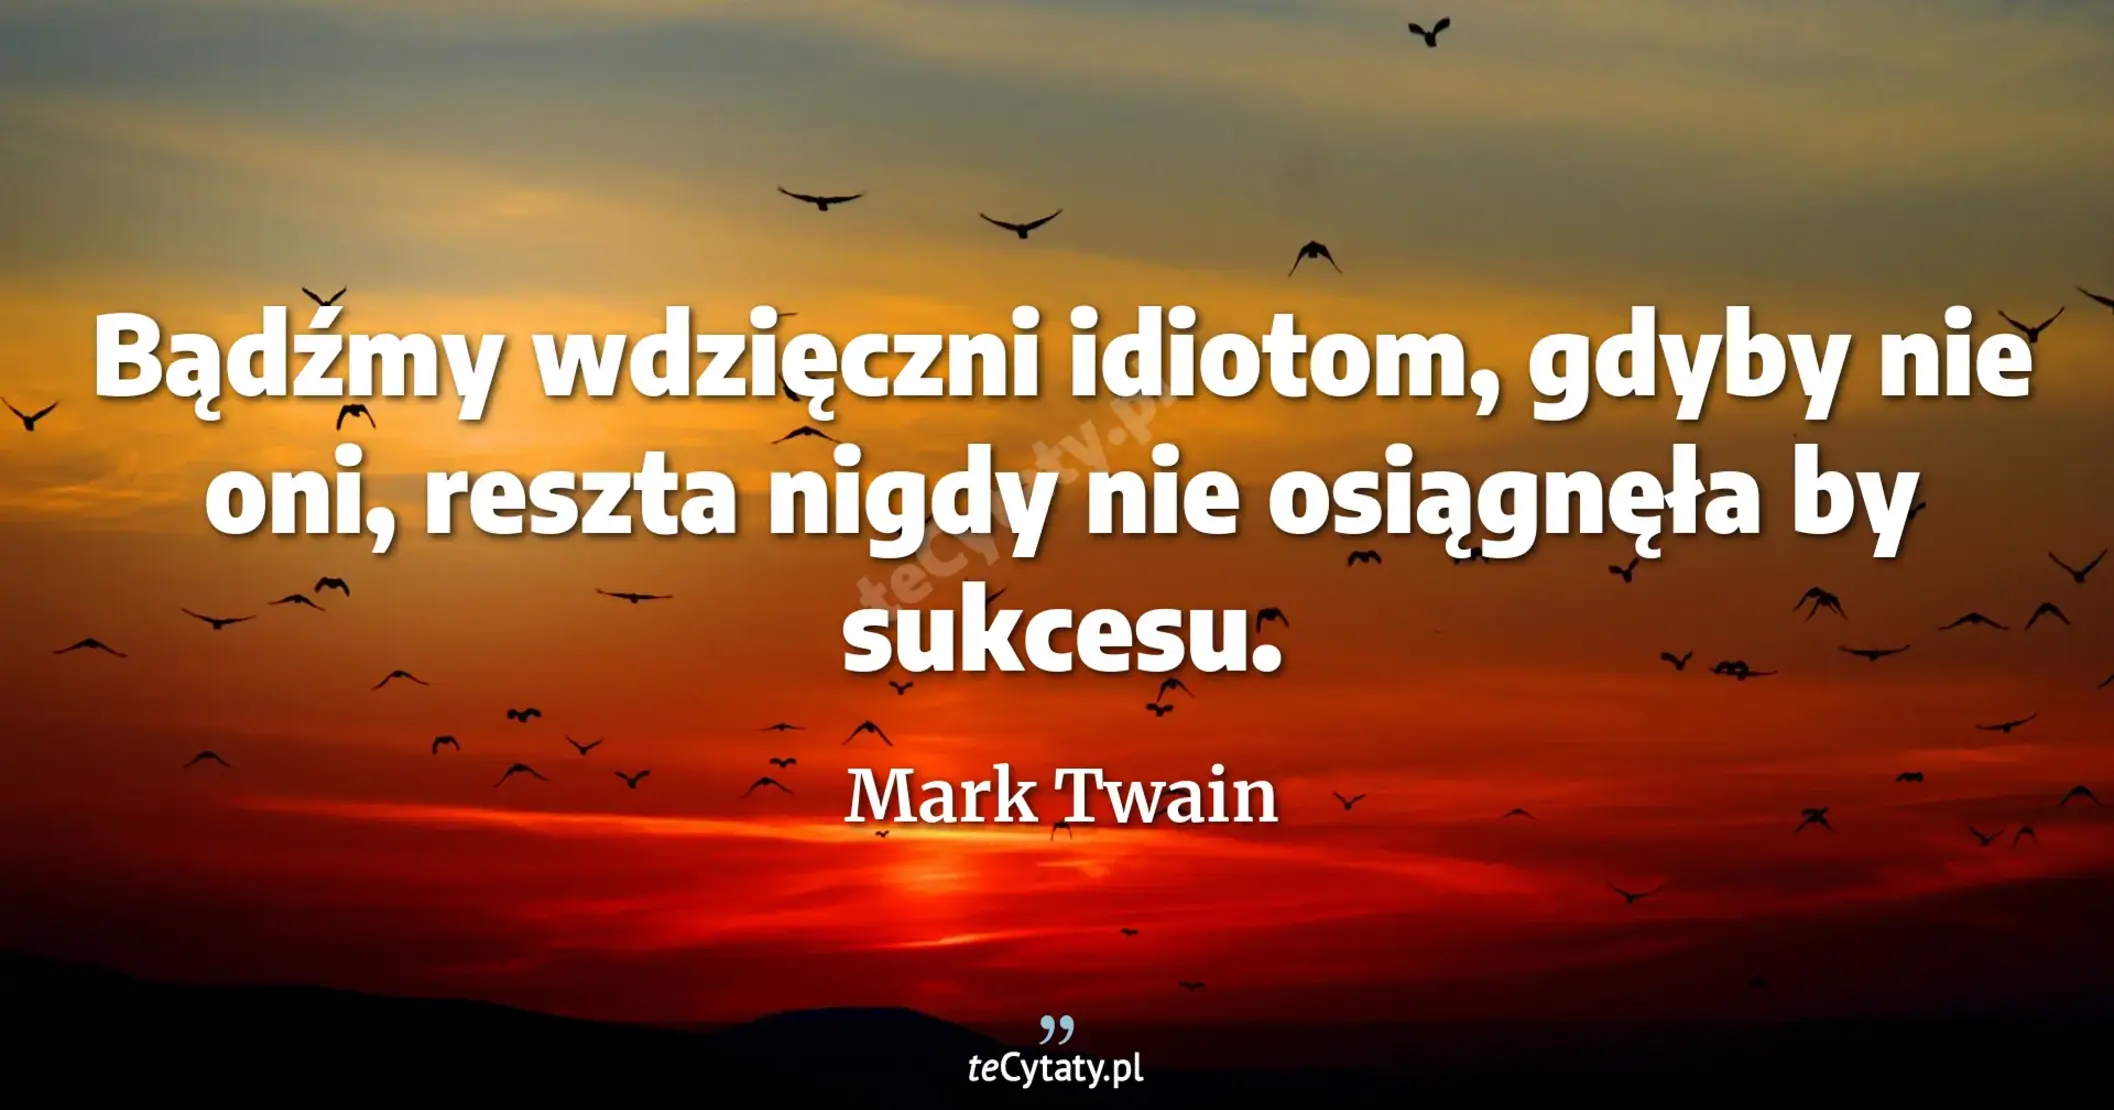 Bądźmy wdzięczni idiotom, gdyby nie oni, reszta nigdy nie osiągnęła by sukcesu. - Mark Twain